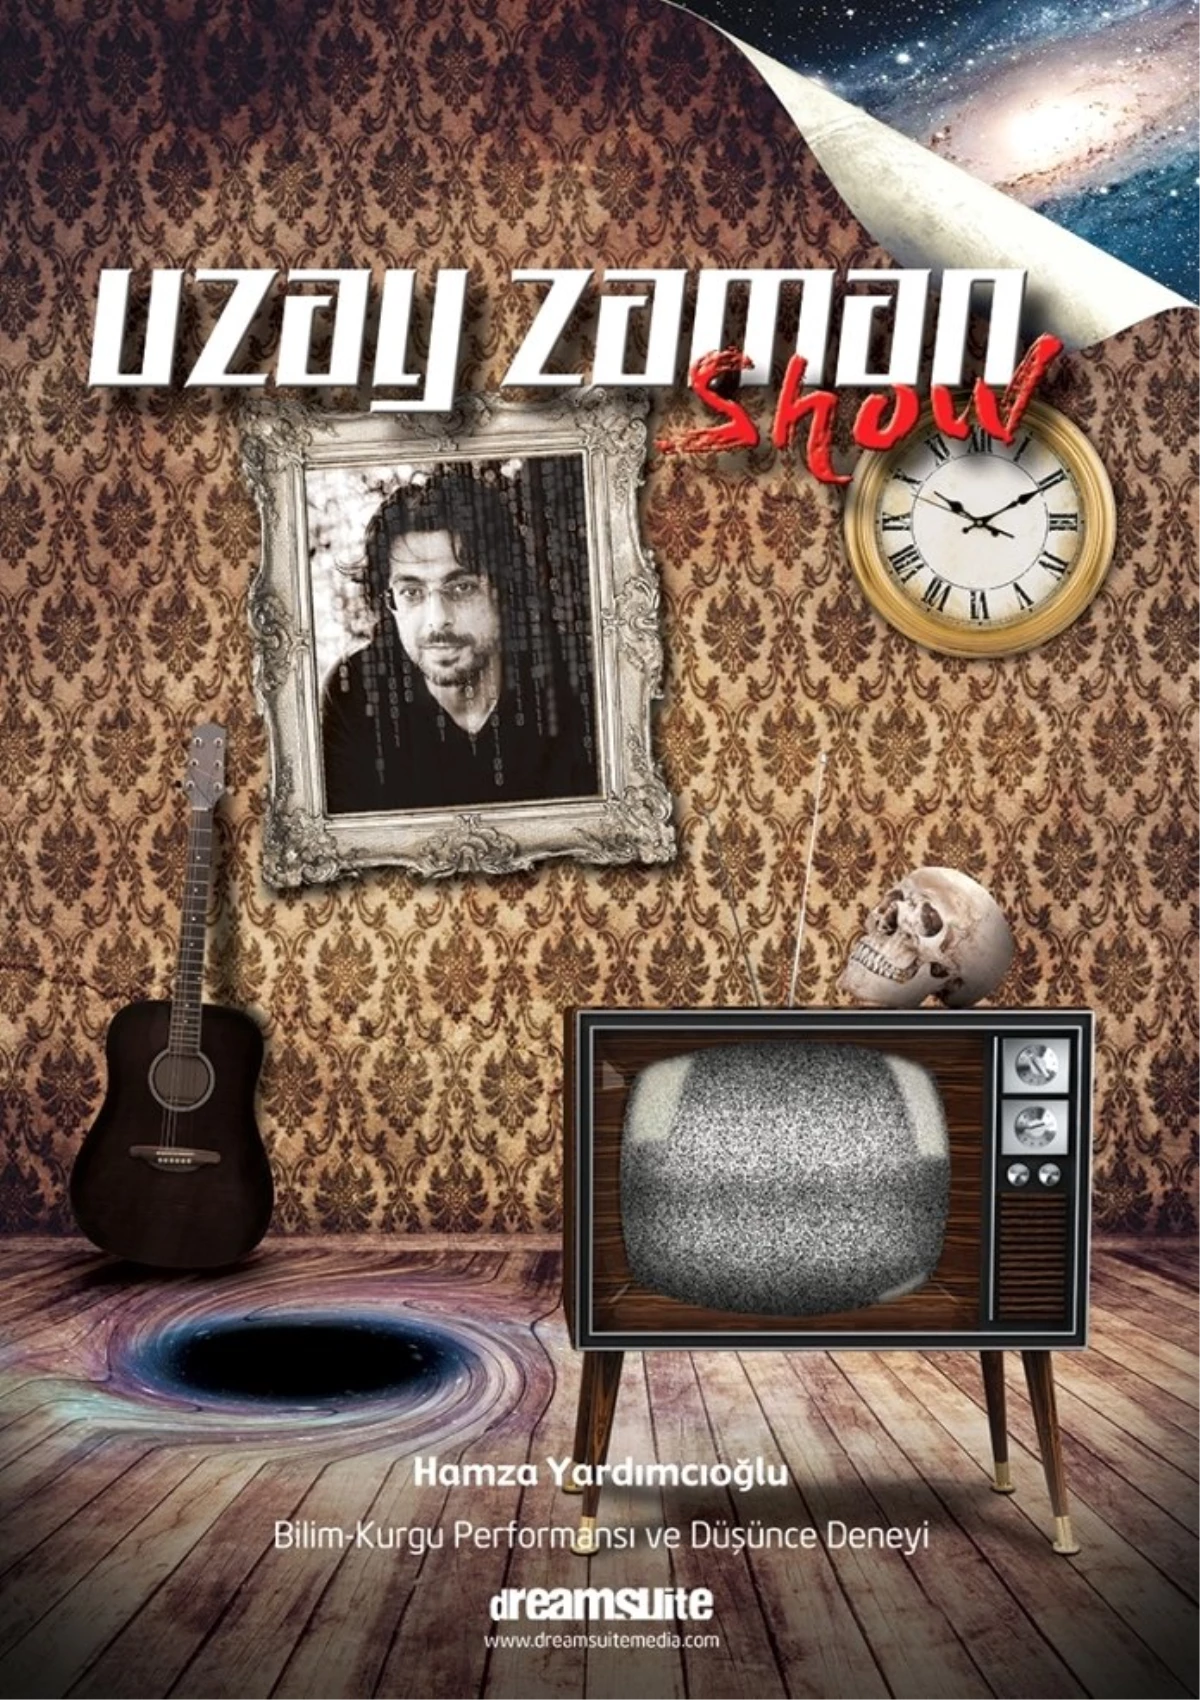 Uzay Zaman Show